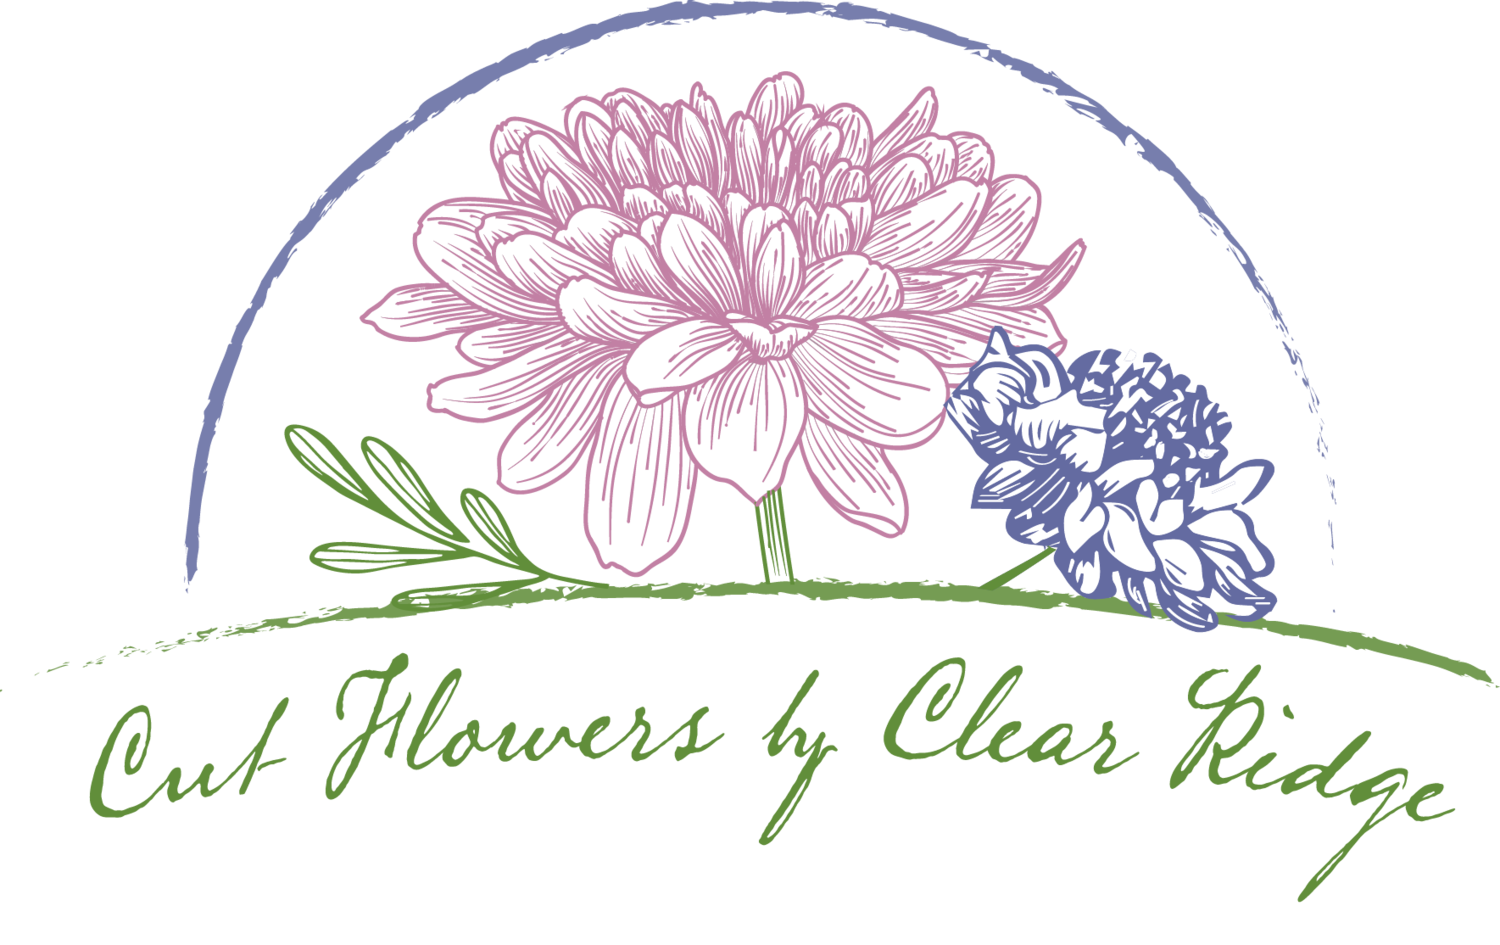 Cut Flowers by Clear Ridge